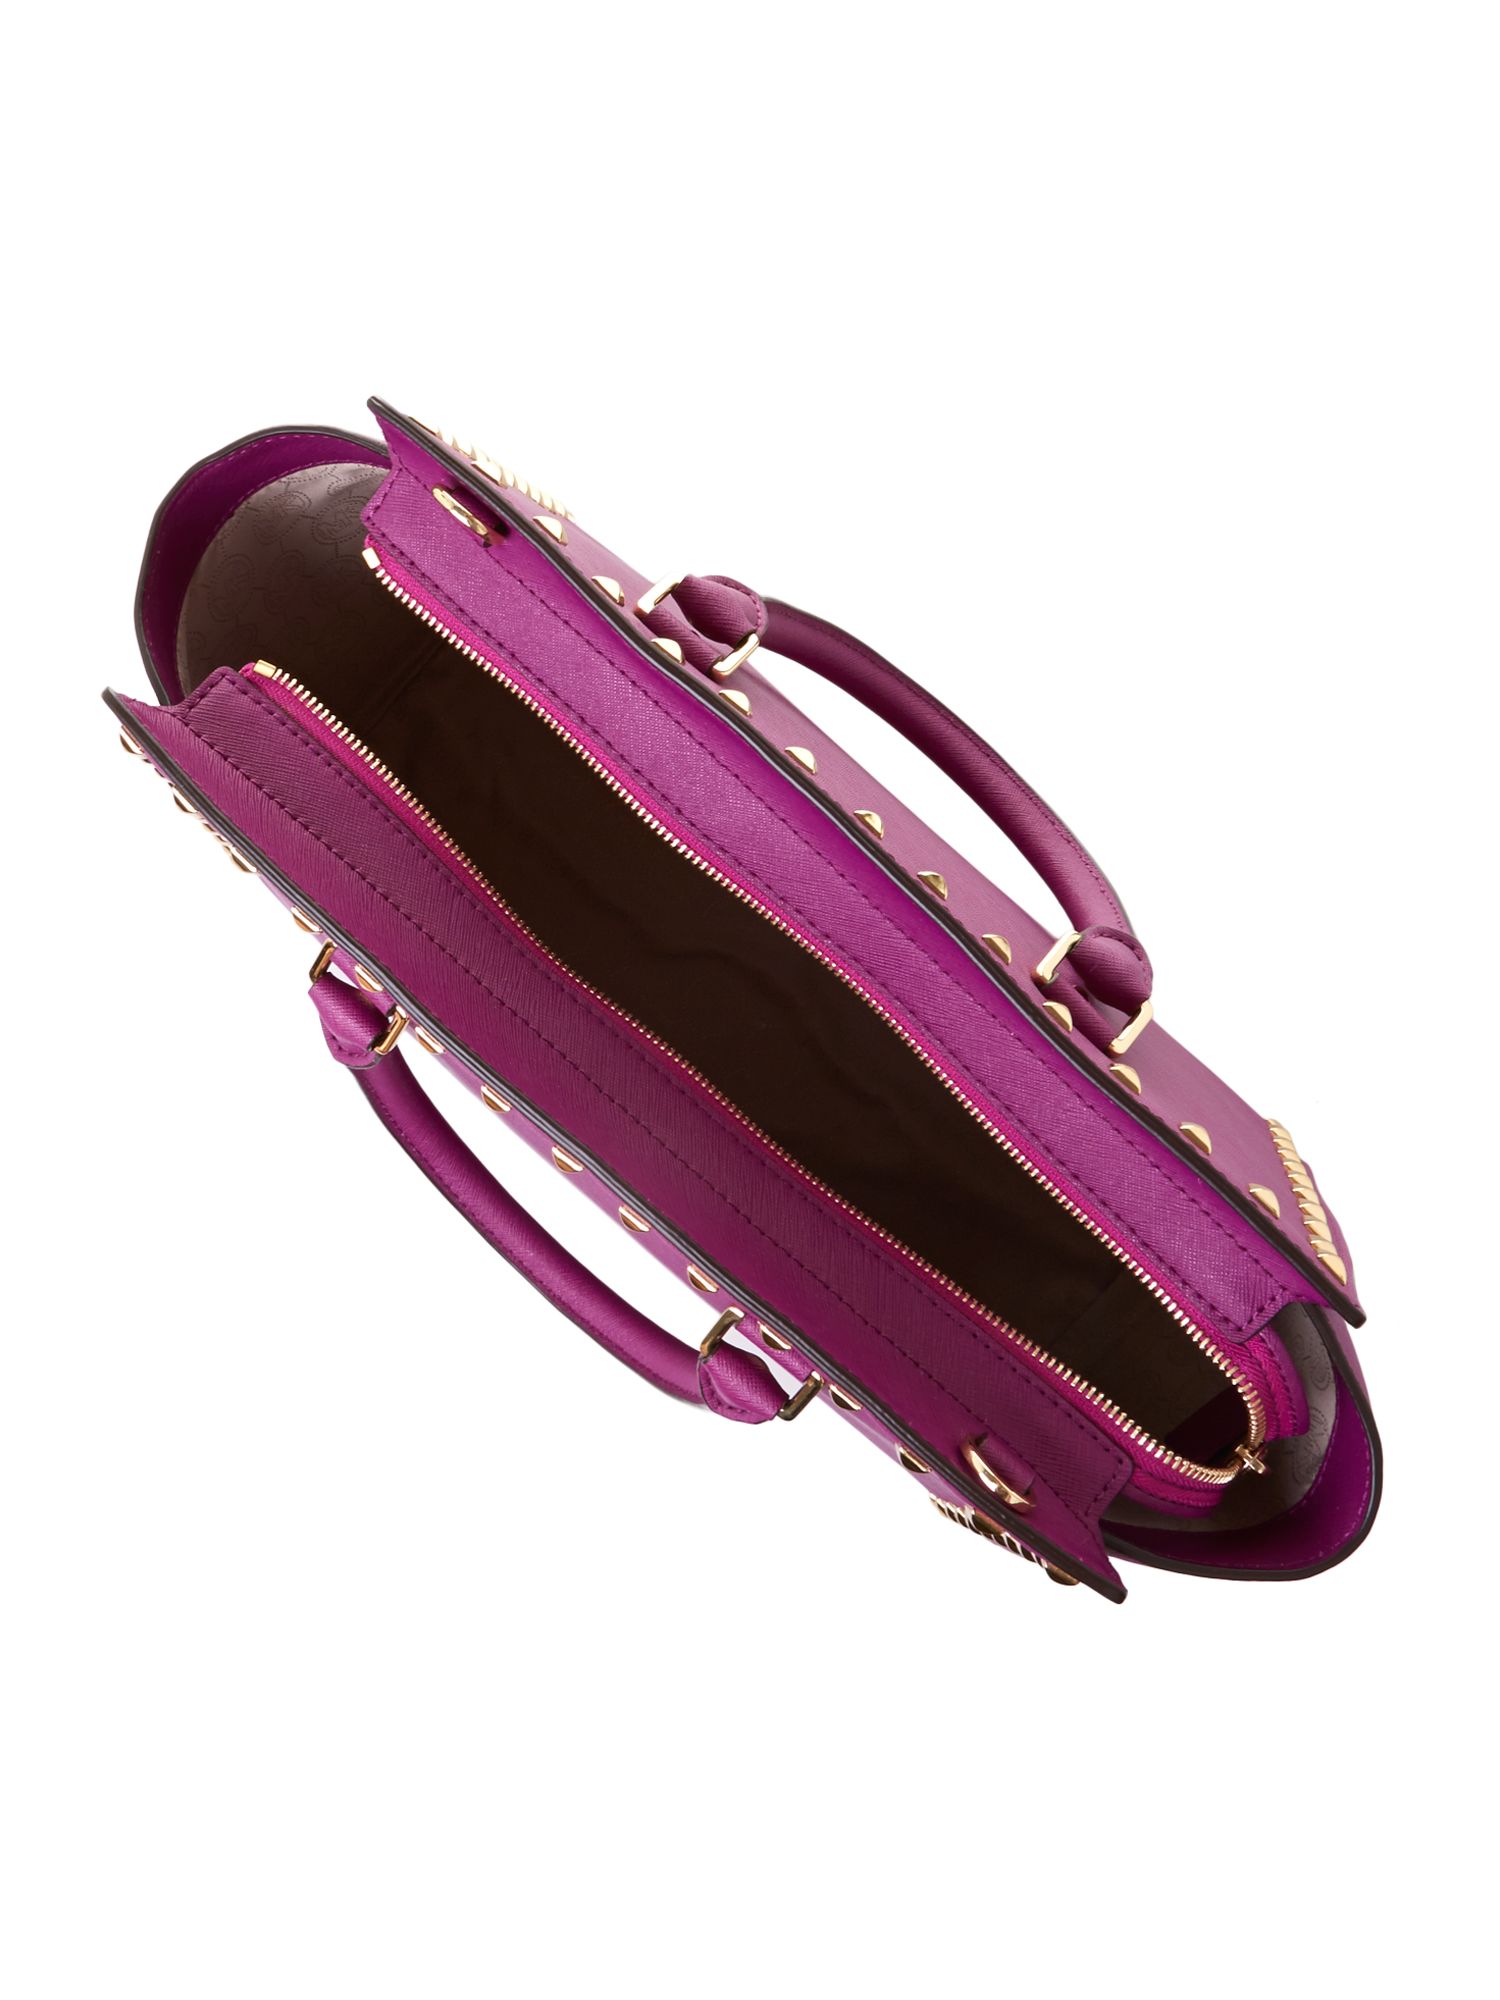 Michael kors Selma Purple Tote Bag in Purple | Lyst